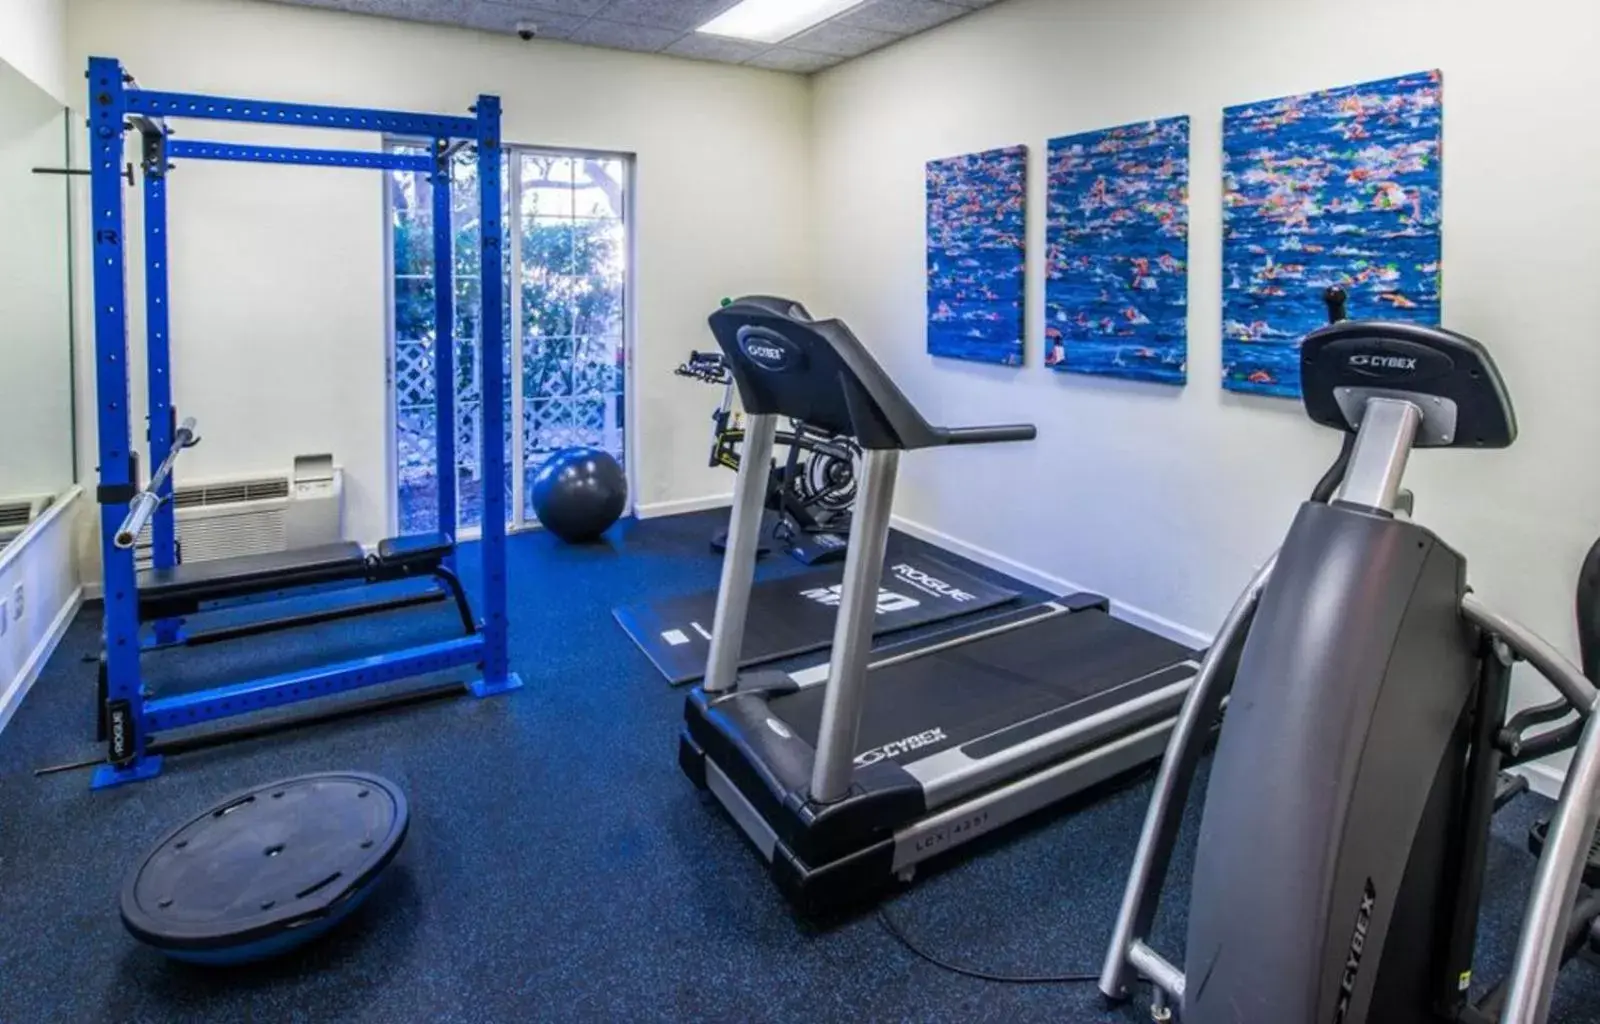 Fitness centre/facilities, Fitness Center/Facilities in Trianon Bonita Bay Hotel